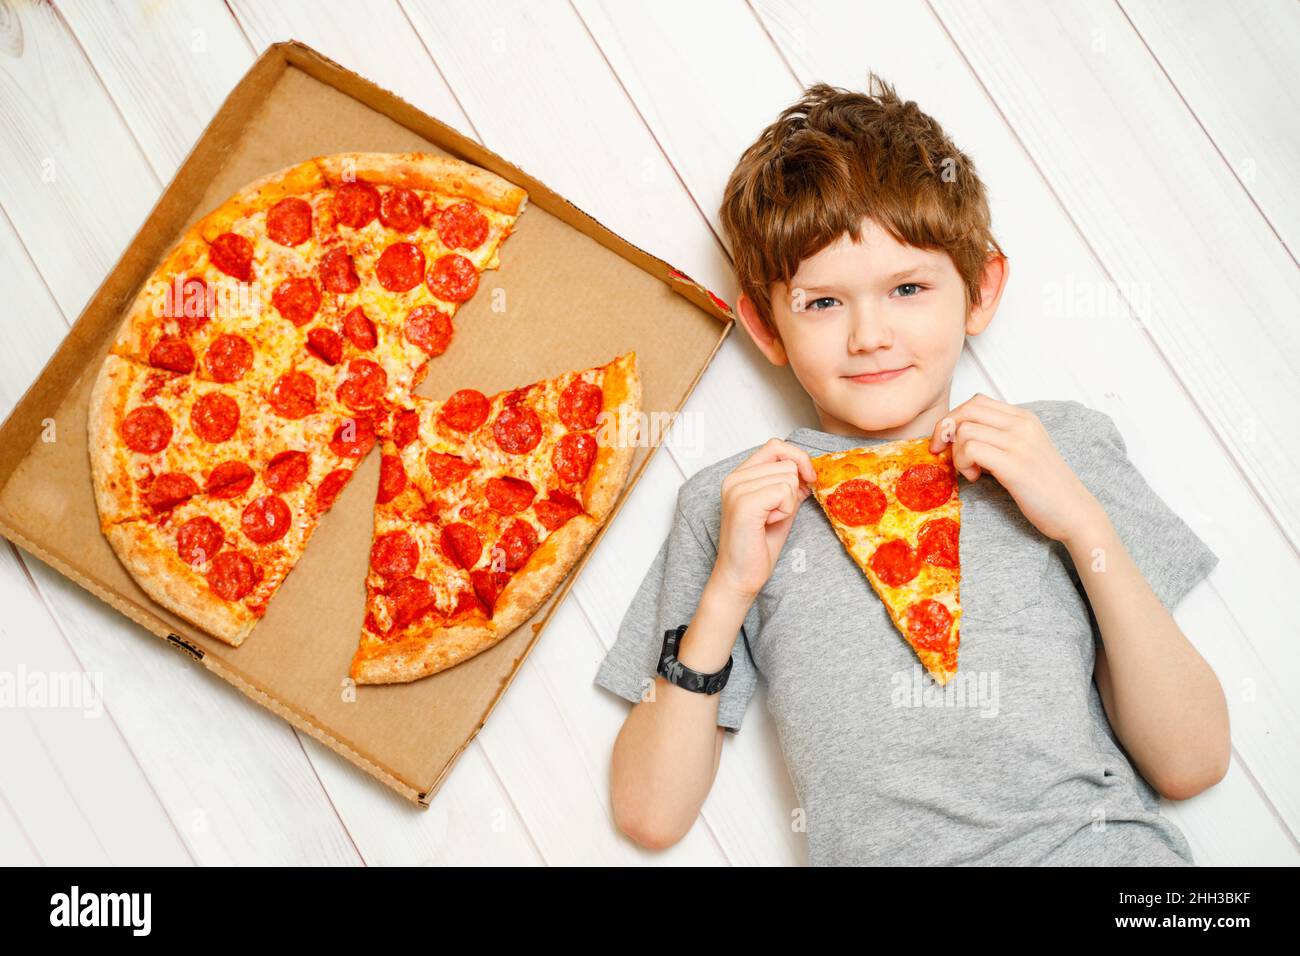 Niedliches Kind, das eine Pizza auf dem Holzboden hält. Quarantänefeier zu Hause. Stockfoto